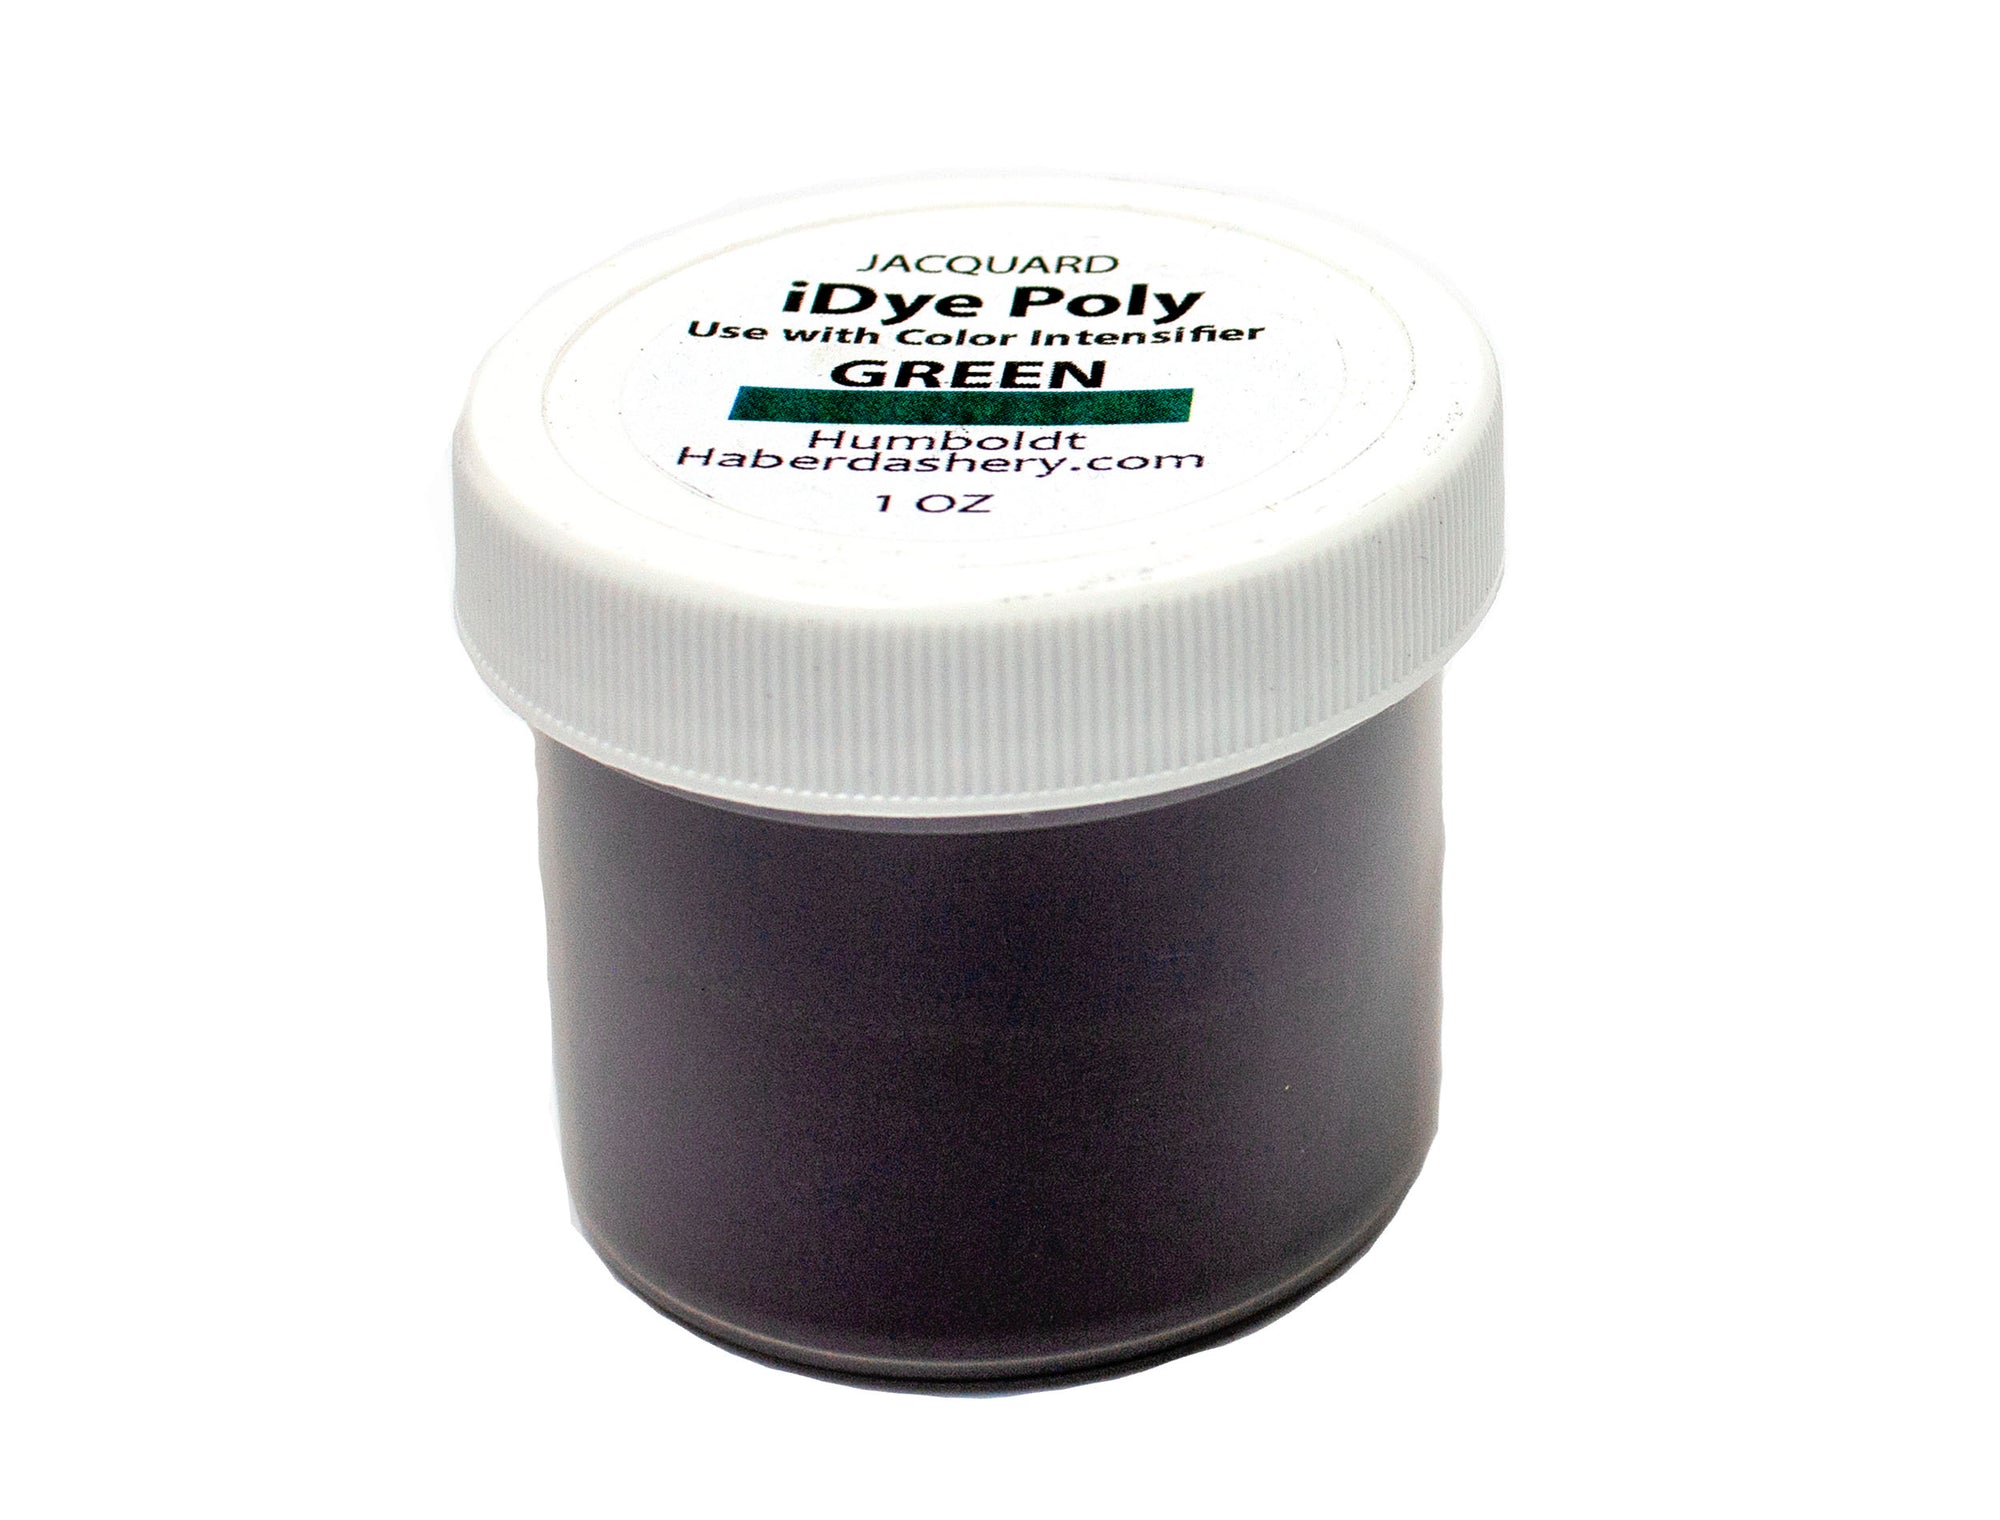 Jacquard iDye Poly Polyester Dye 1 Oz Jar